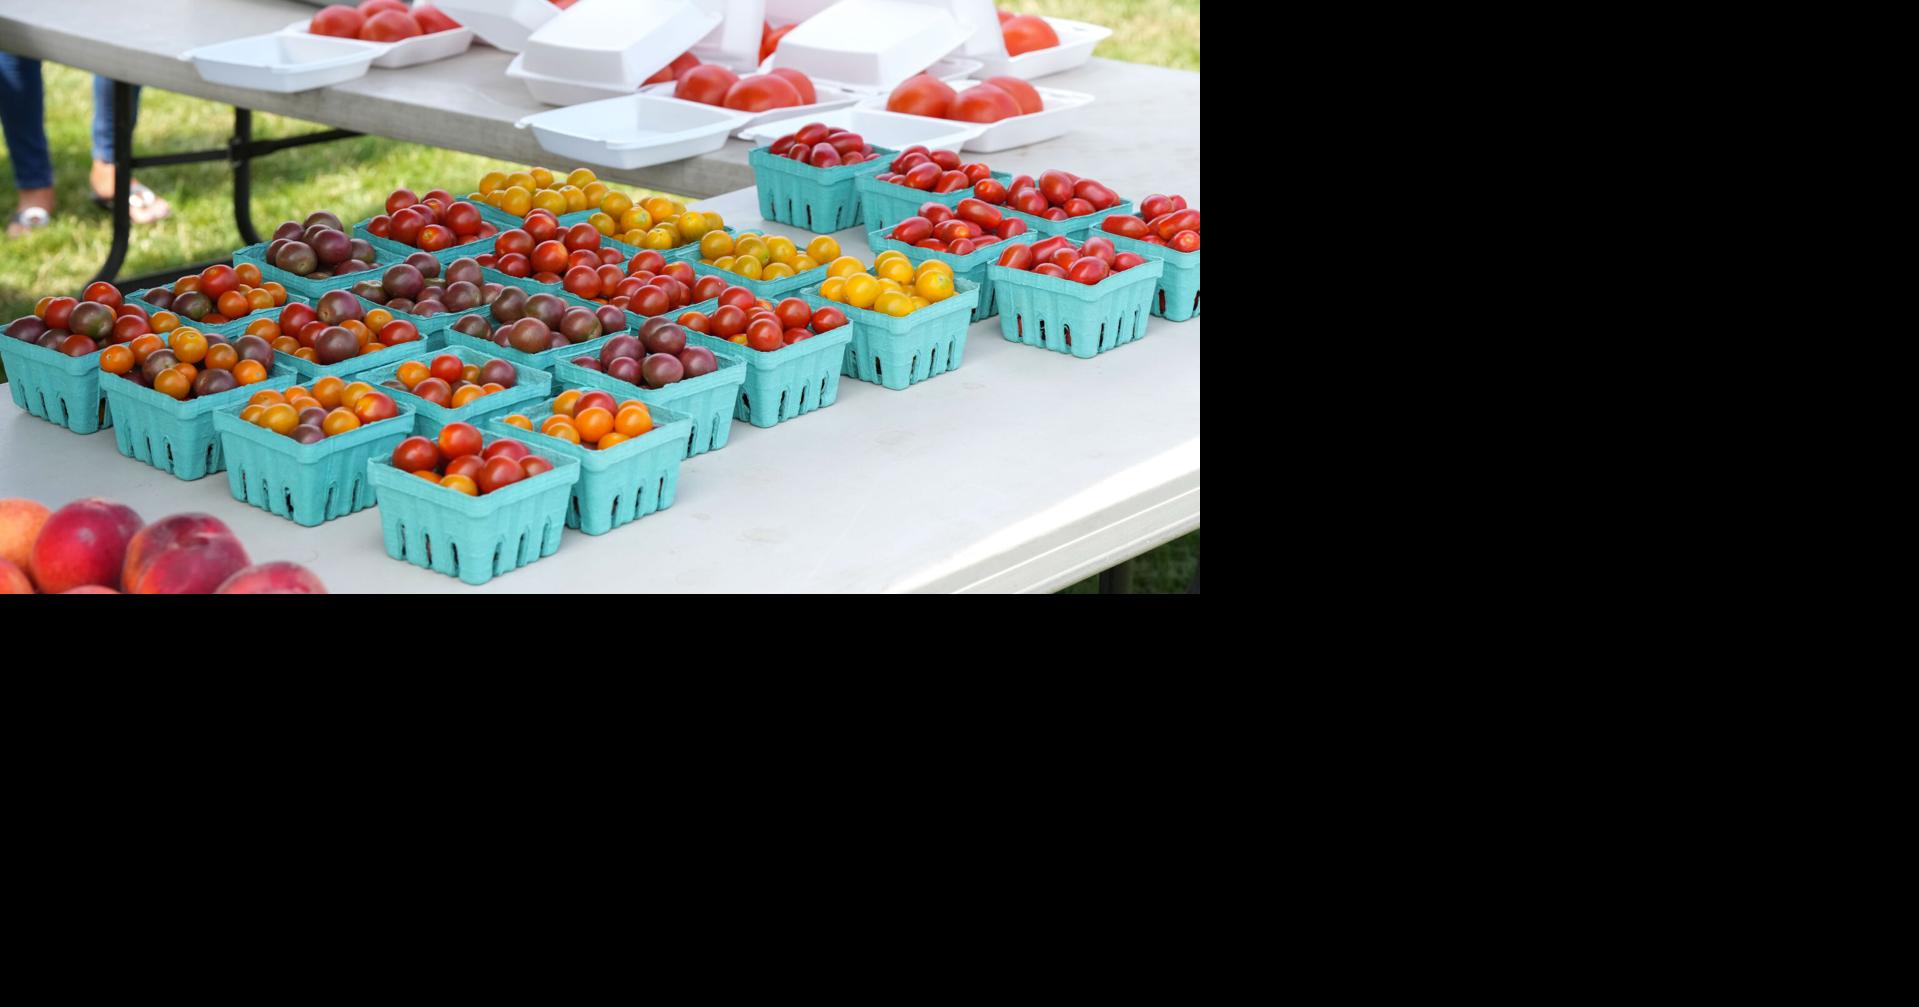 Washington Boro Tomato Festival returns to Lancaster County [photos